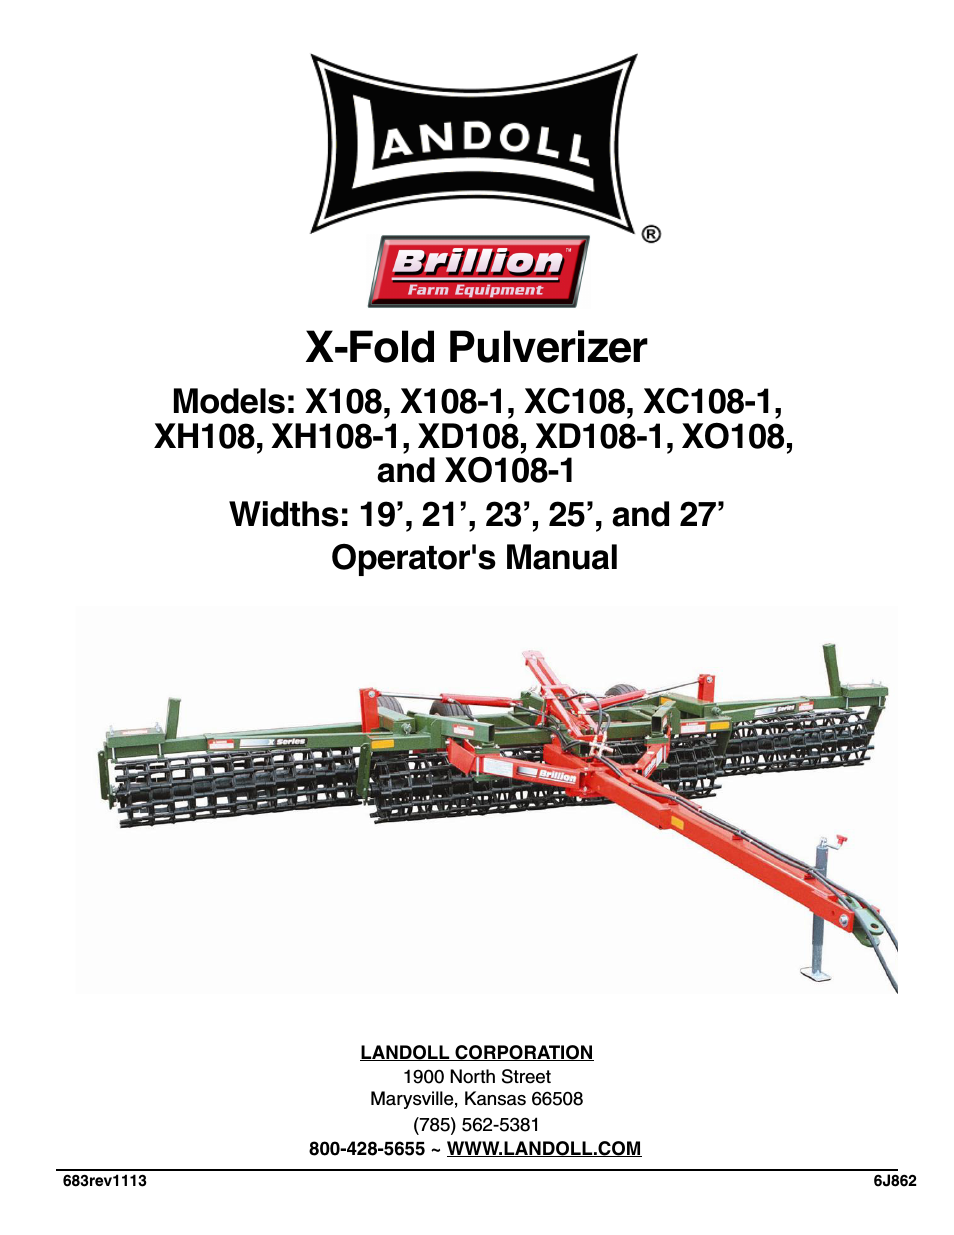 XC108/XC108-1 X-Fold Pulverizer